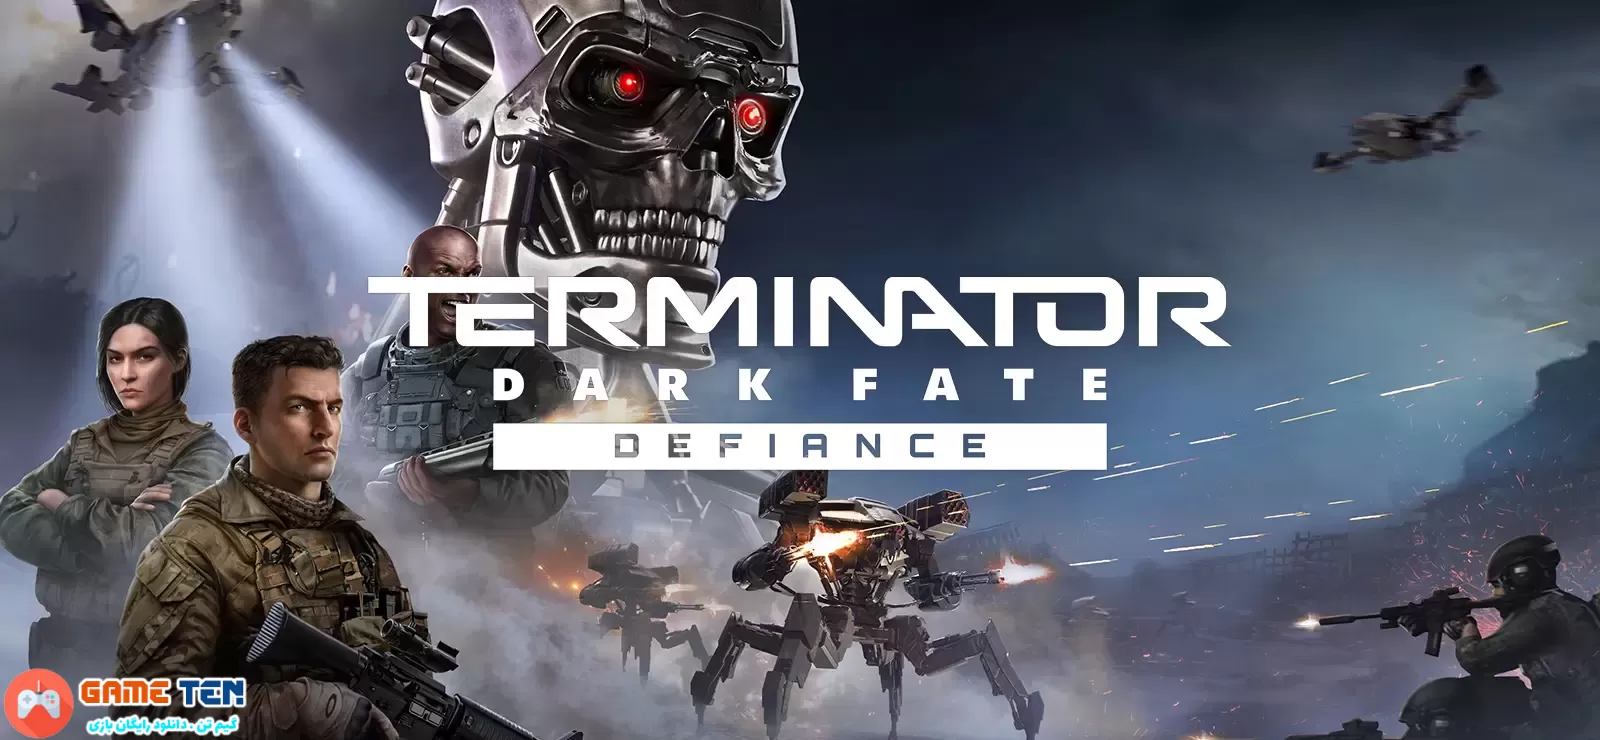 دانلود بازی Terminator Dark Fate Defiance برای کامپیوتر